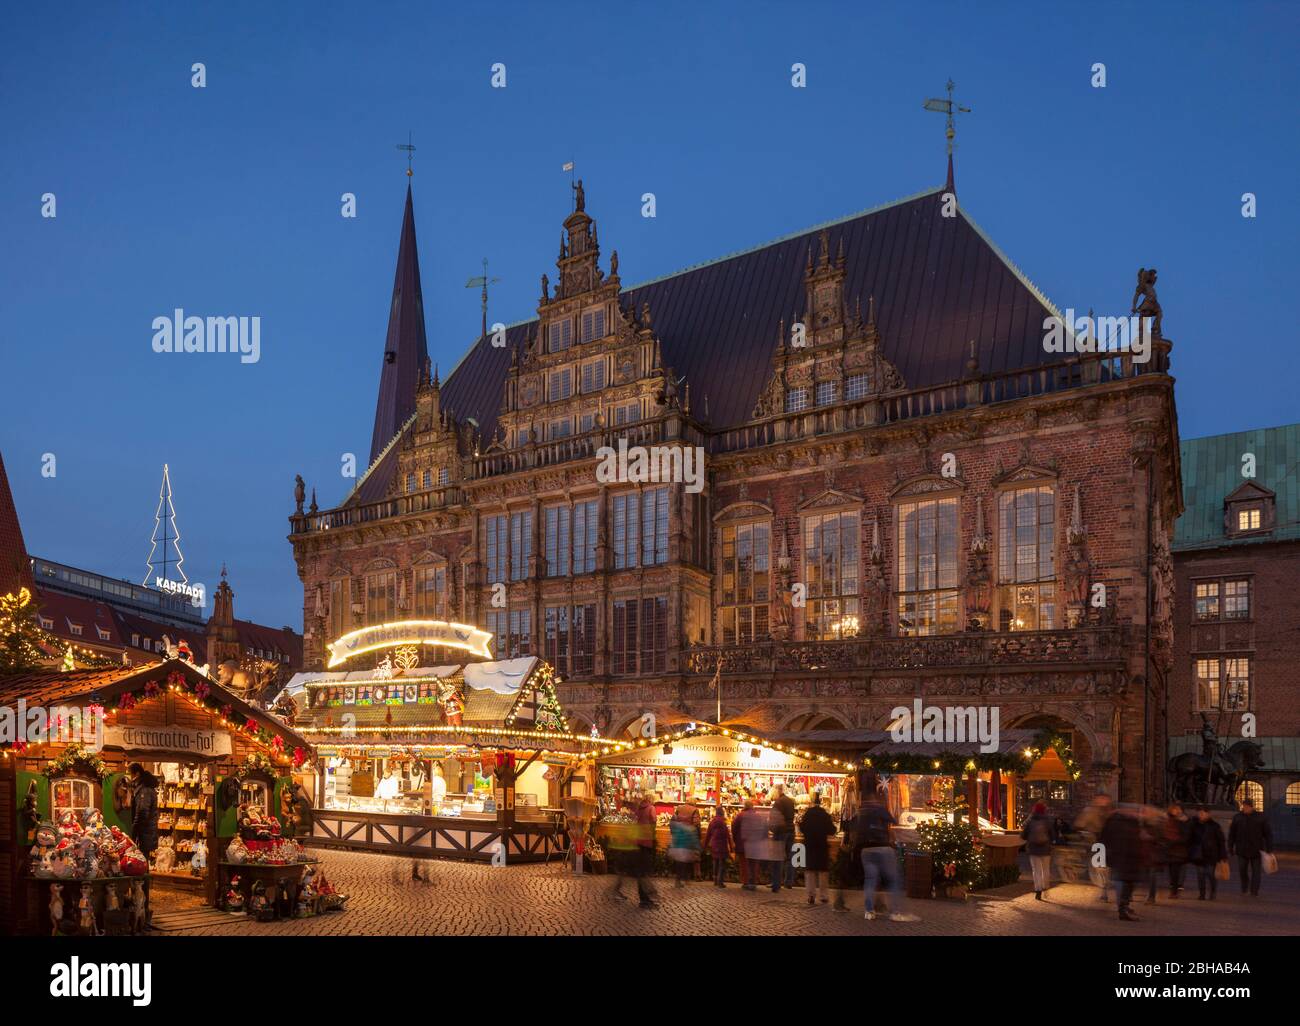 Altes Rathaus mit Weihnachtsmarkt am Marktplatz bei Abenddämmerung, Bremen, Deutschland, Europa Stock Photo